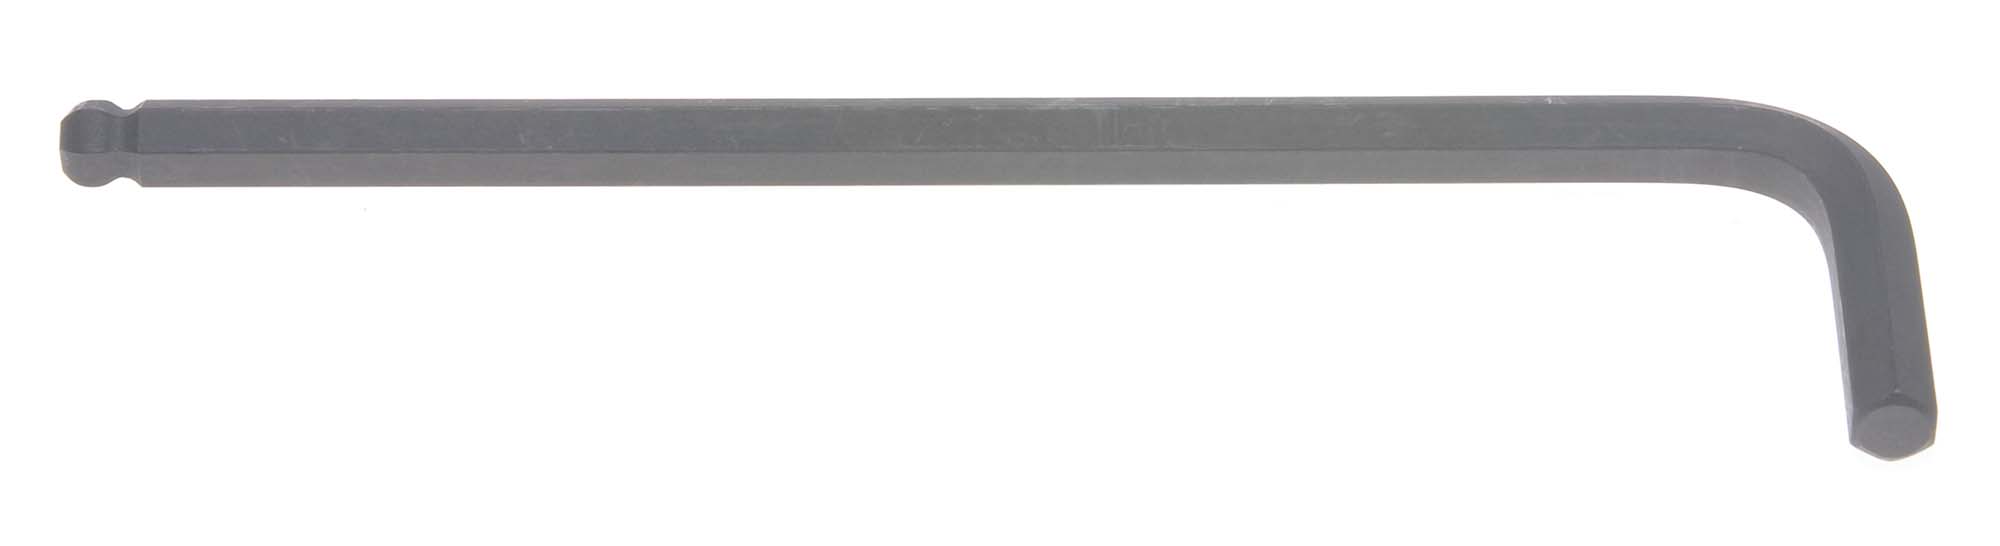 Bondhus 10980 12mm Balldriver L-Wrench Hex Key